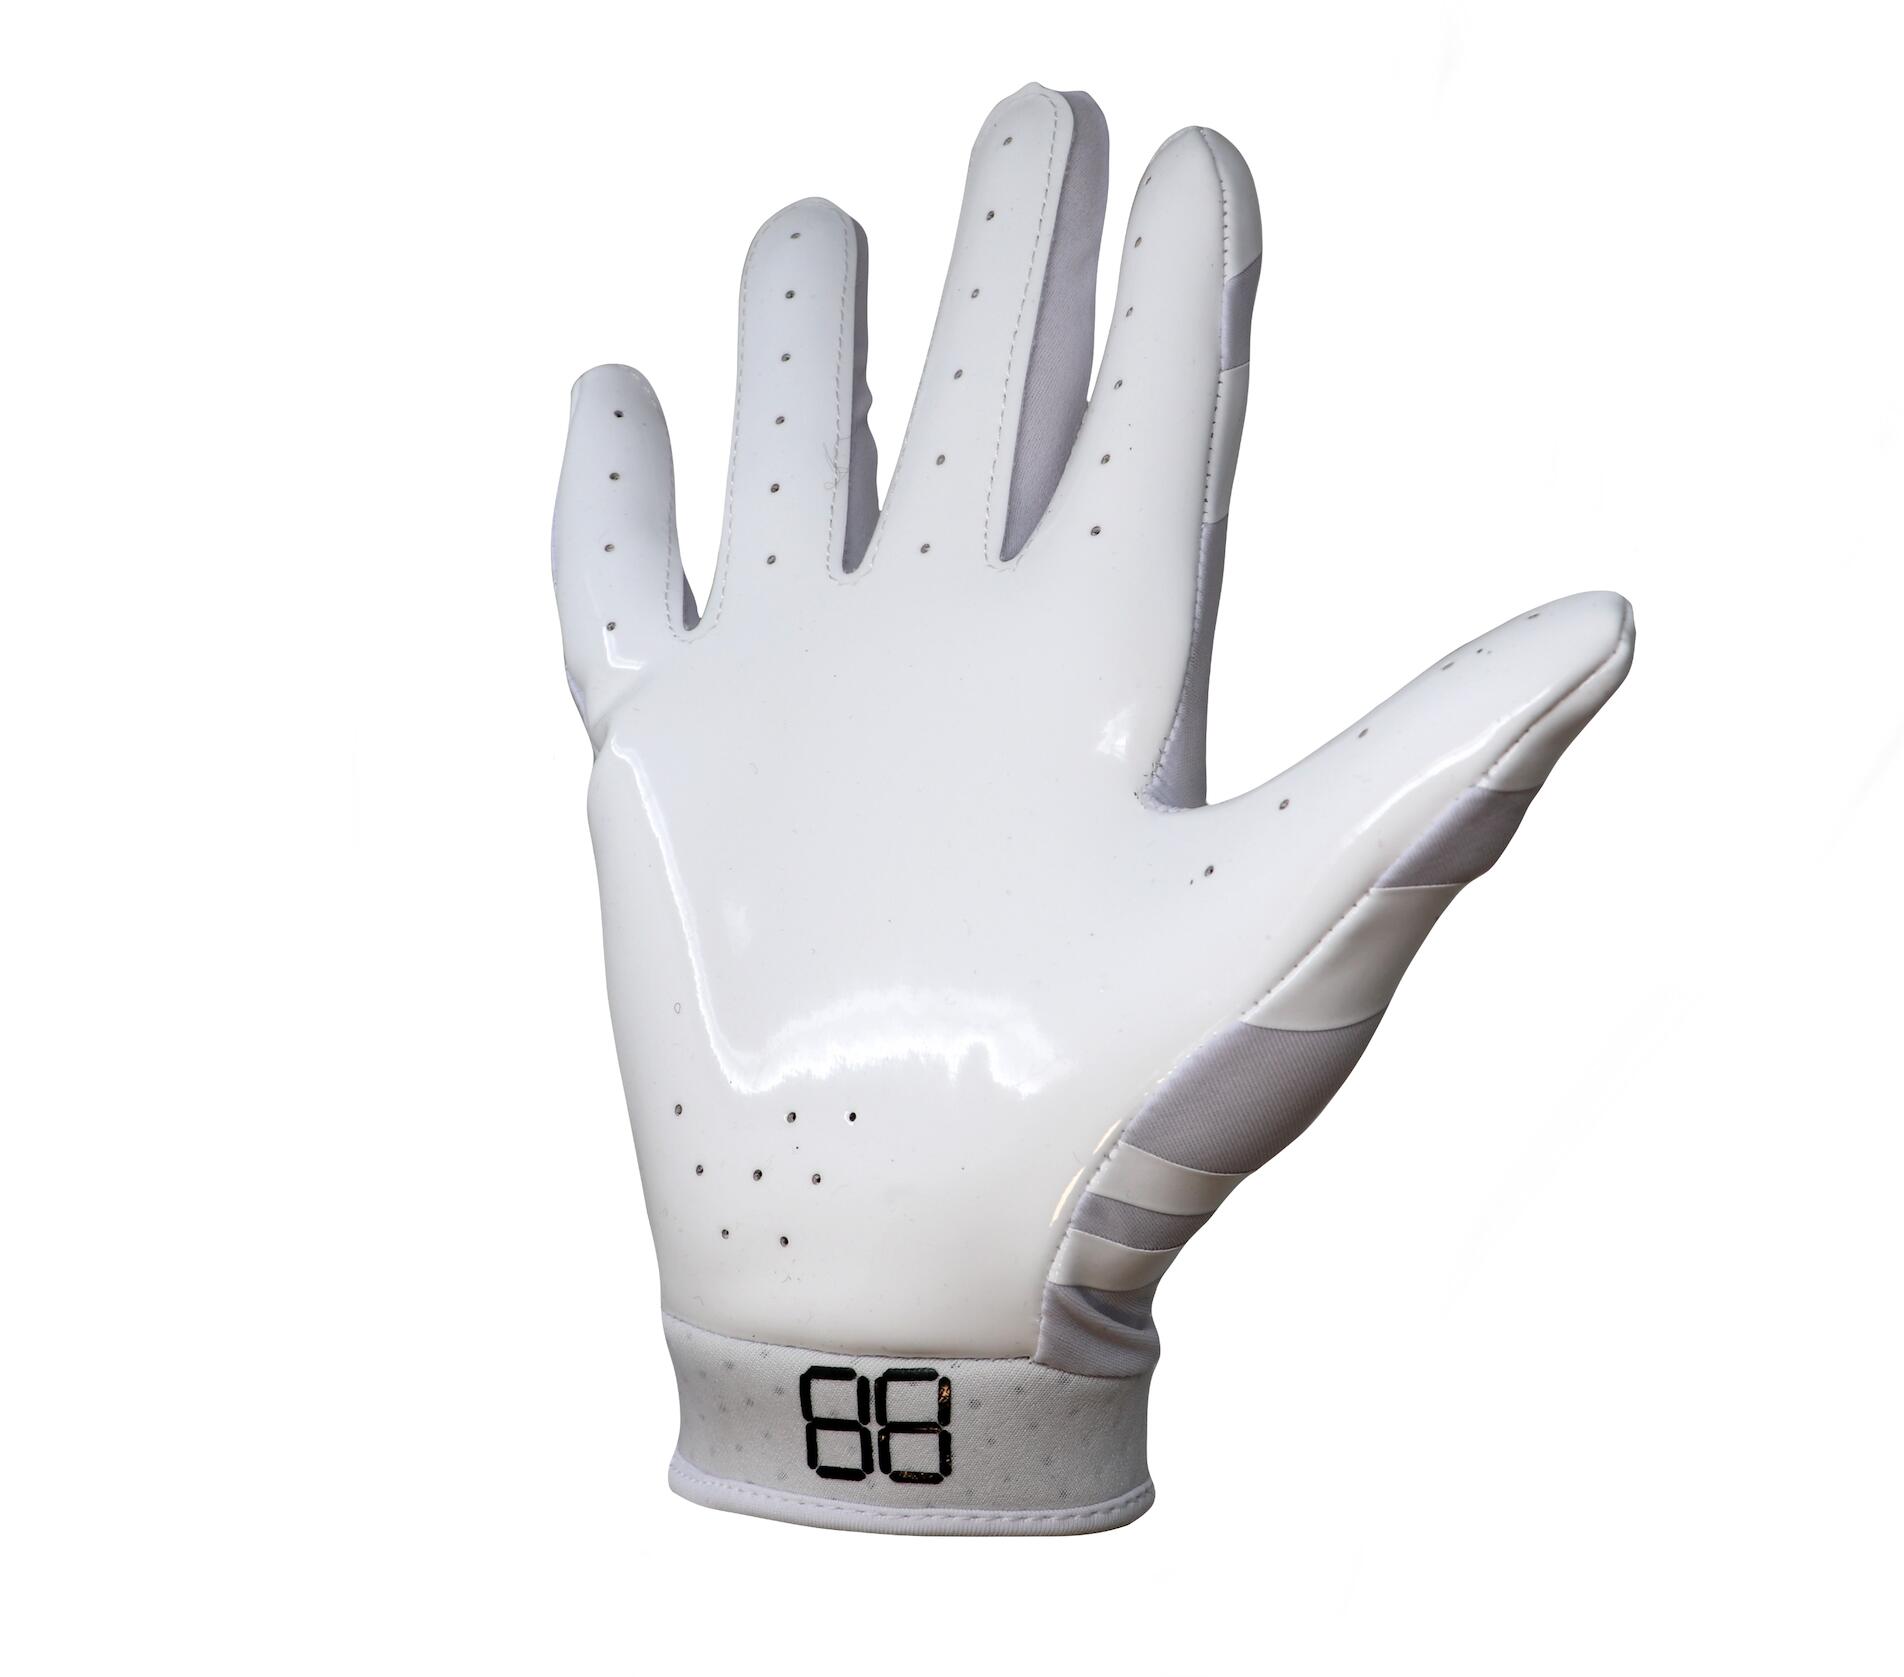 FRG-03 Black Junior American football pro receiver gloves, RE,DB,RB 3/4